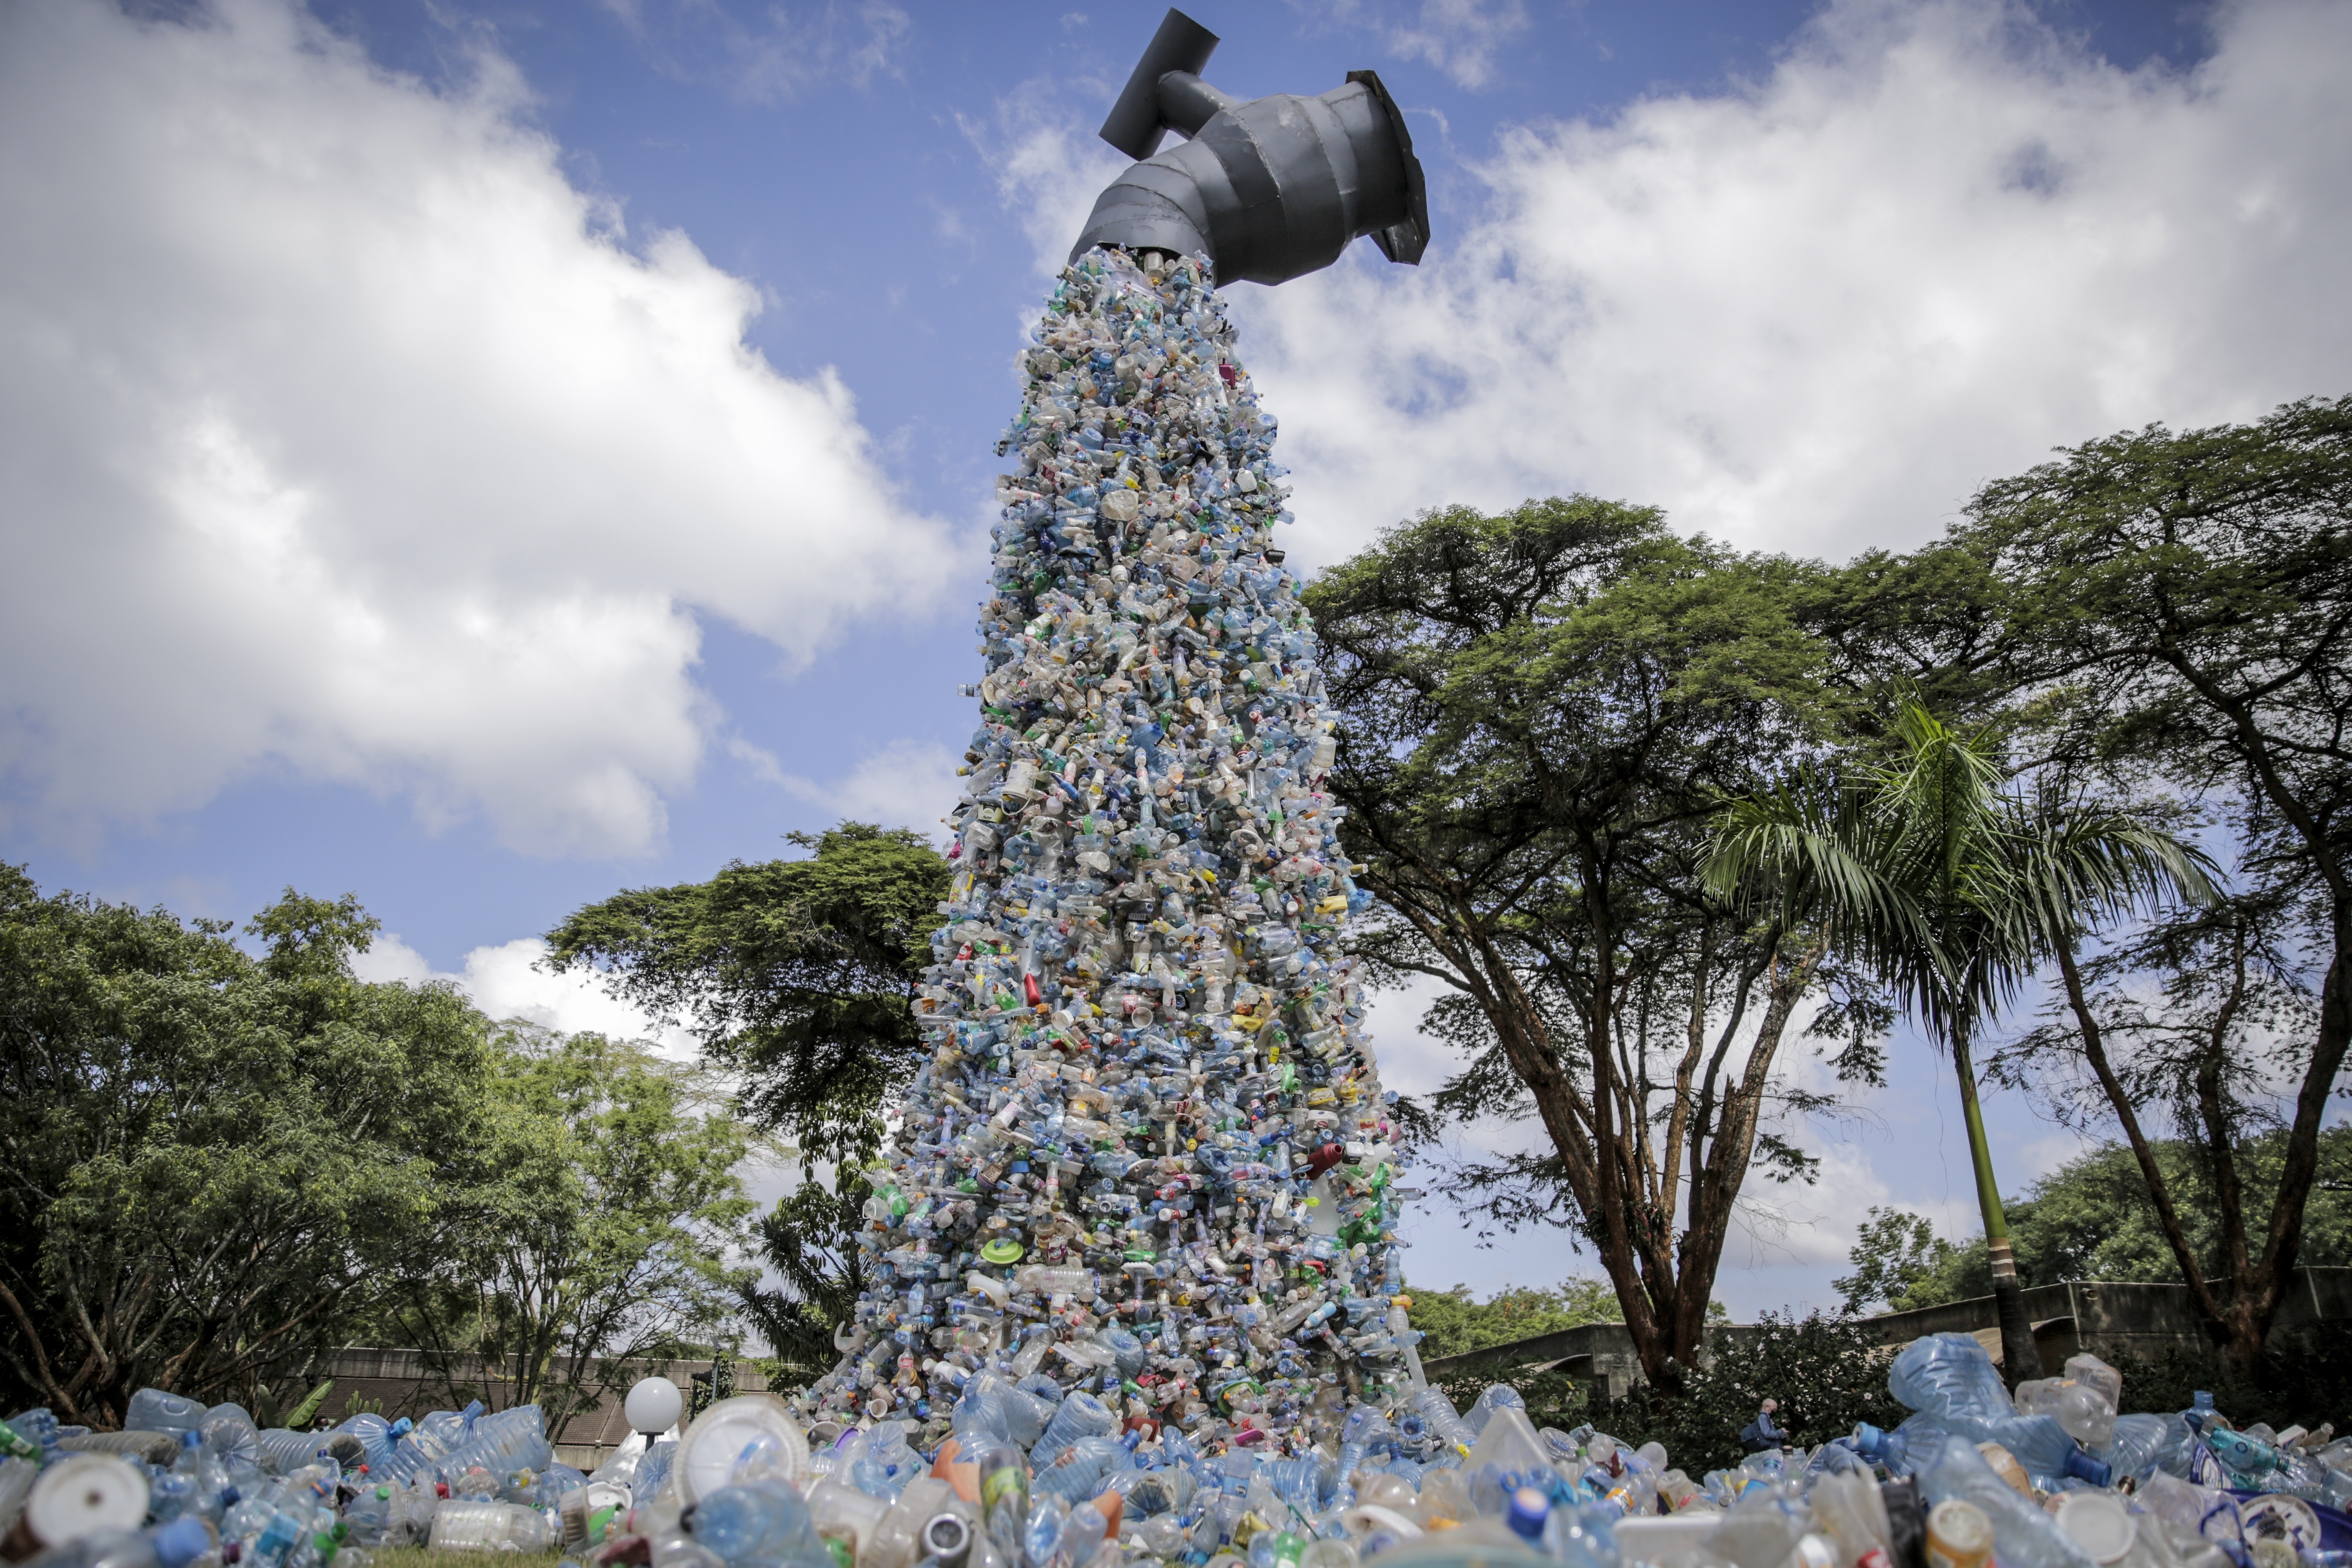 以石化公司为首的大型塑胶生产商和商业团体正在游说，联合国塑胶公约能允许减少塑胶废弃物可换算成信用额度。美联社